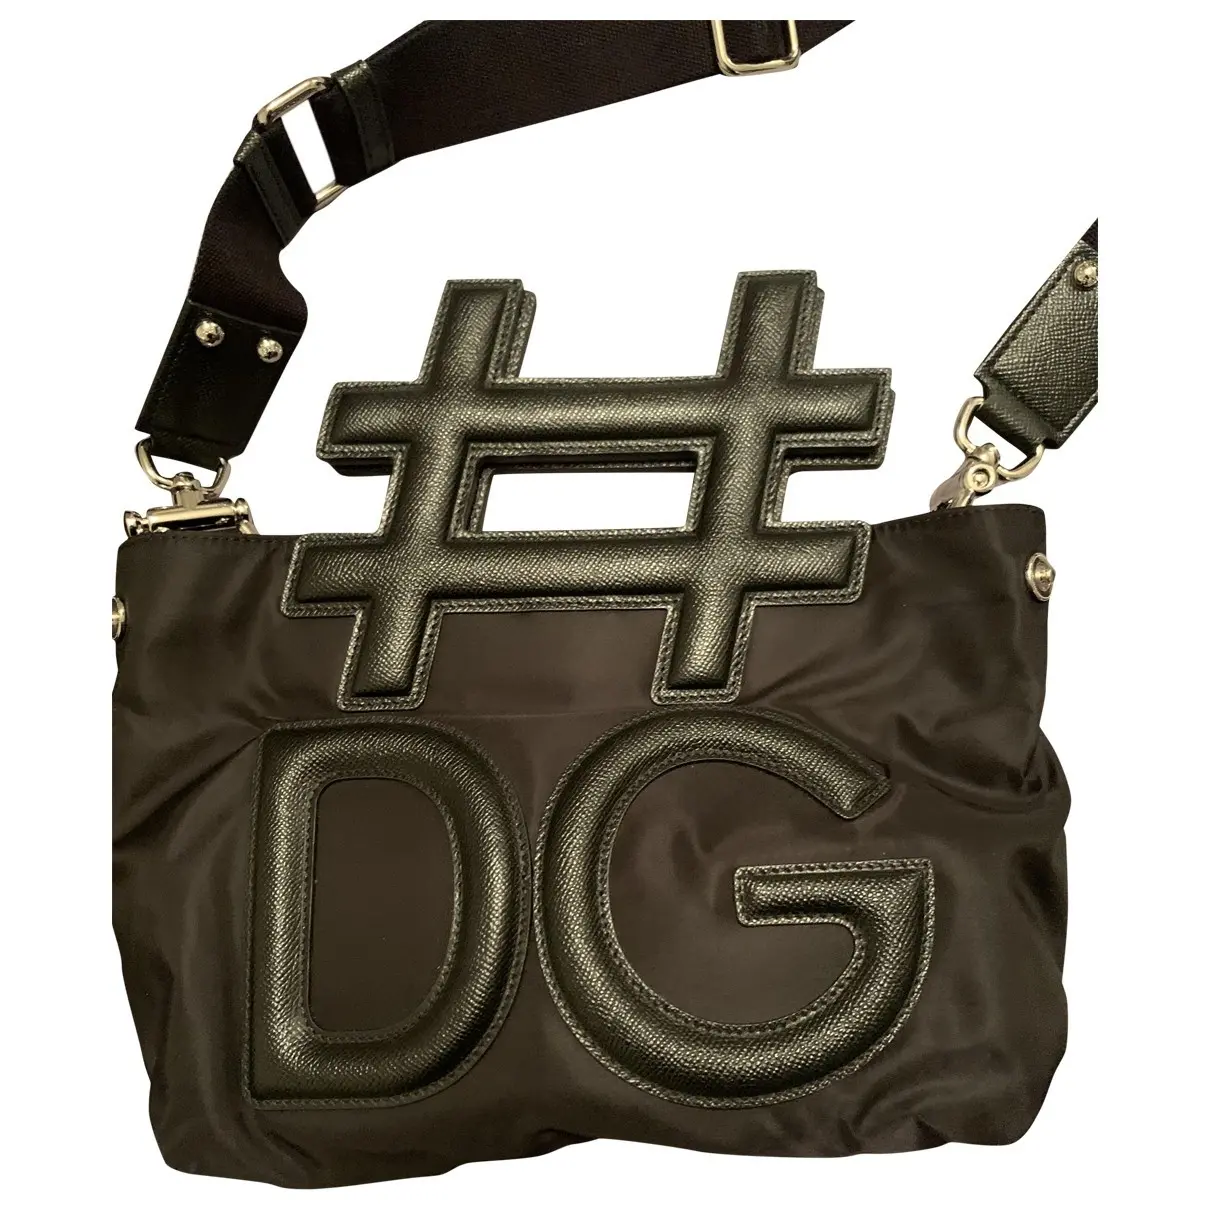 Handbag Dolce & Gabbana